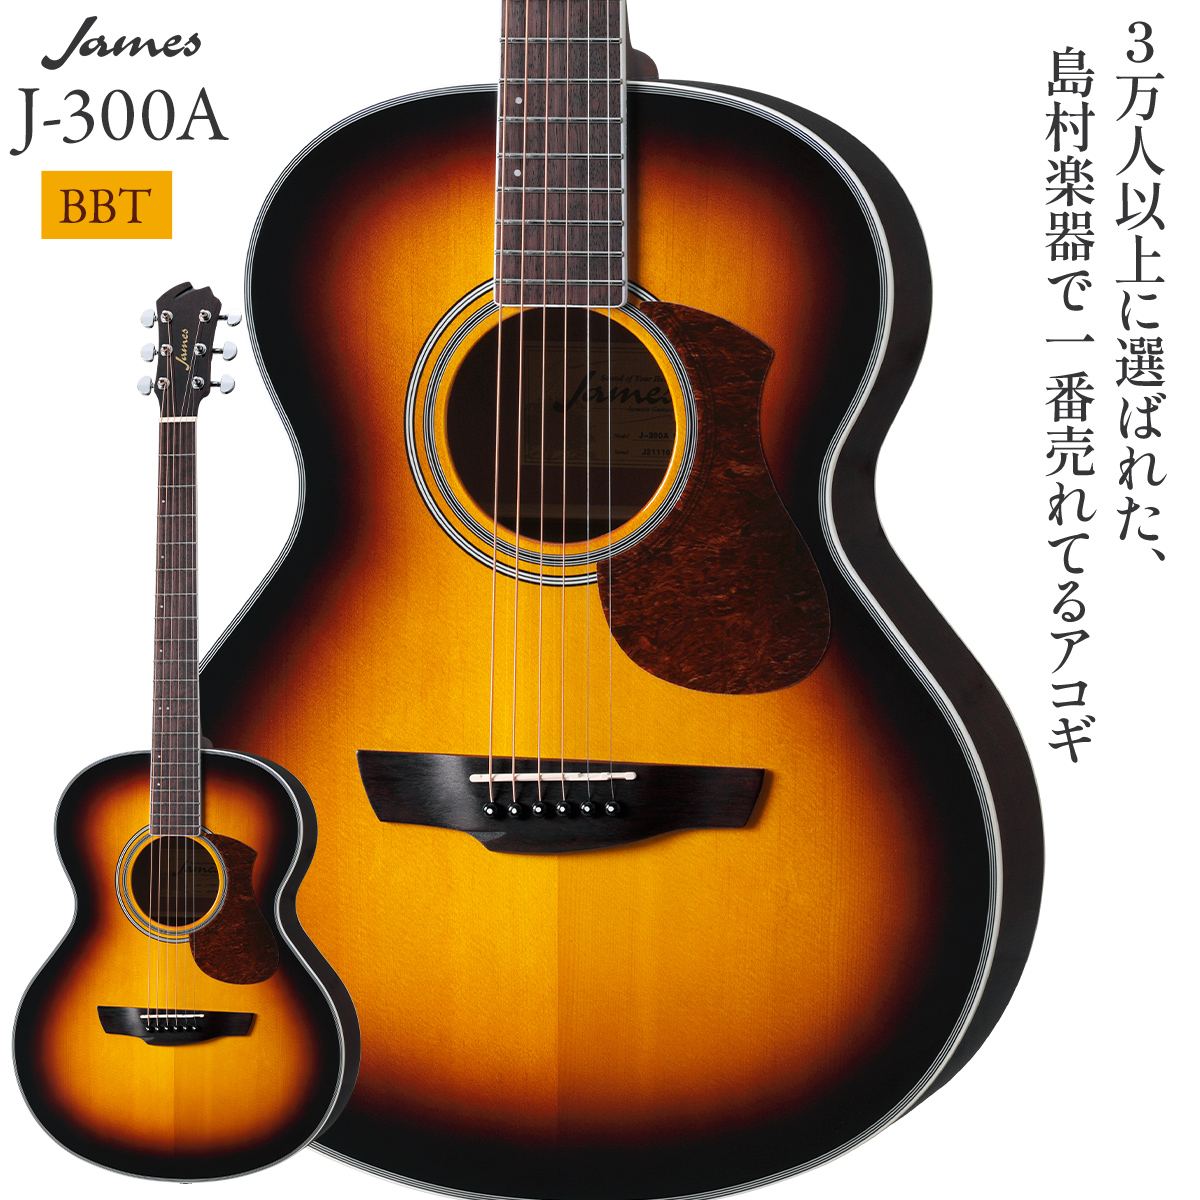 James J-300A BBT (ブラウンバースト) アコースティックギター 【ジェームス】